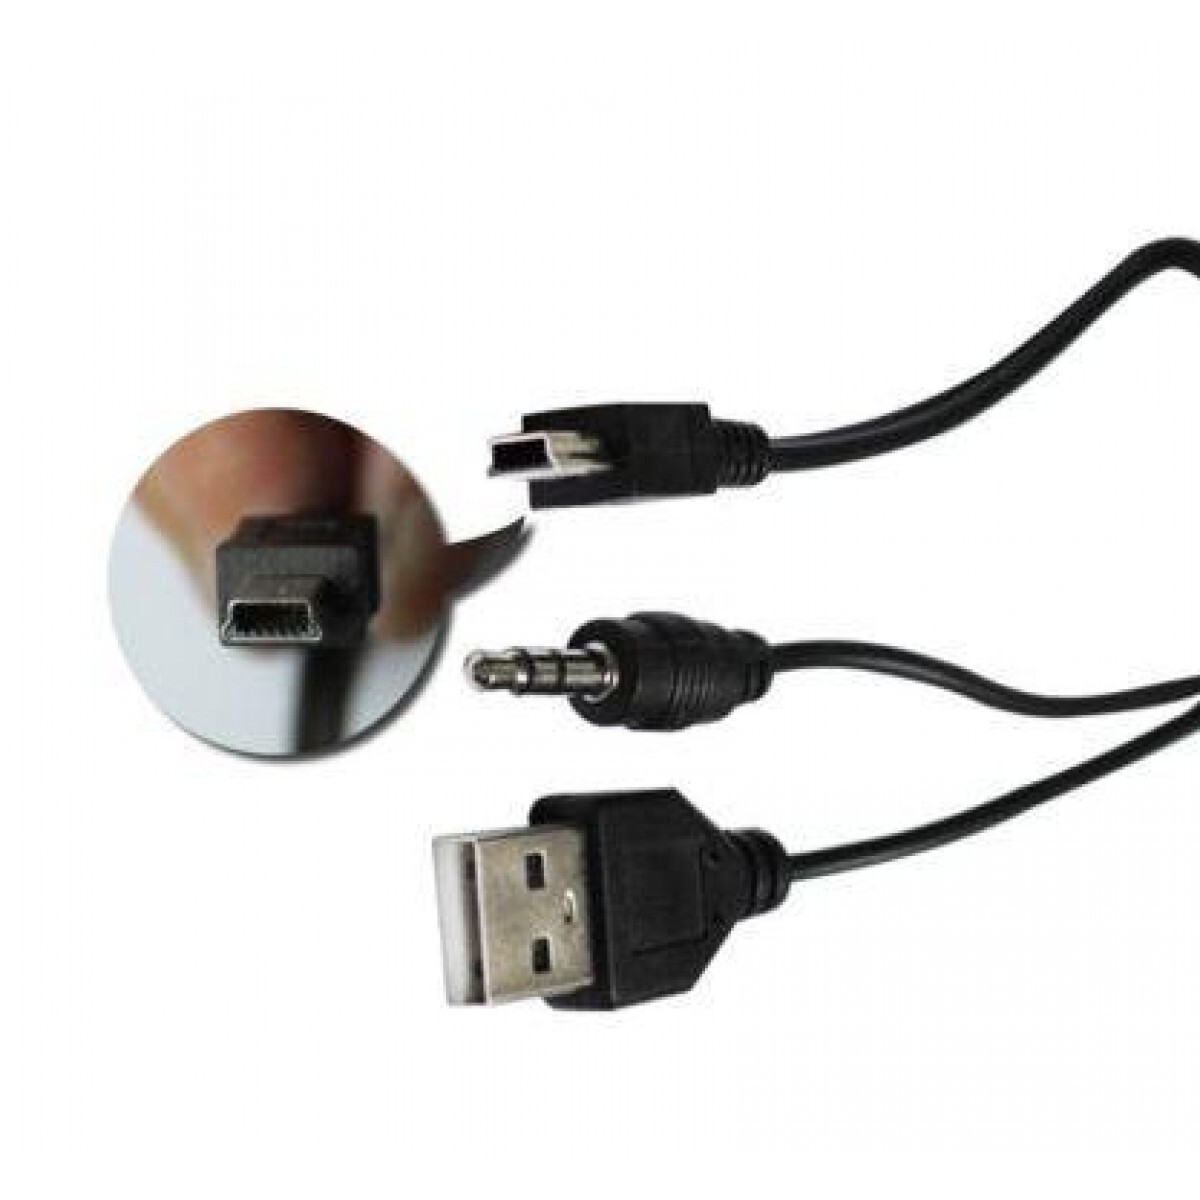 Как подключить флешку к магнитоле без USB своими руками?